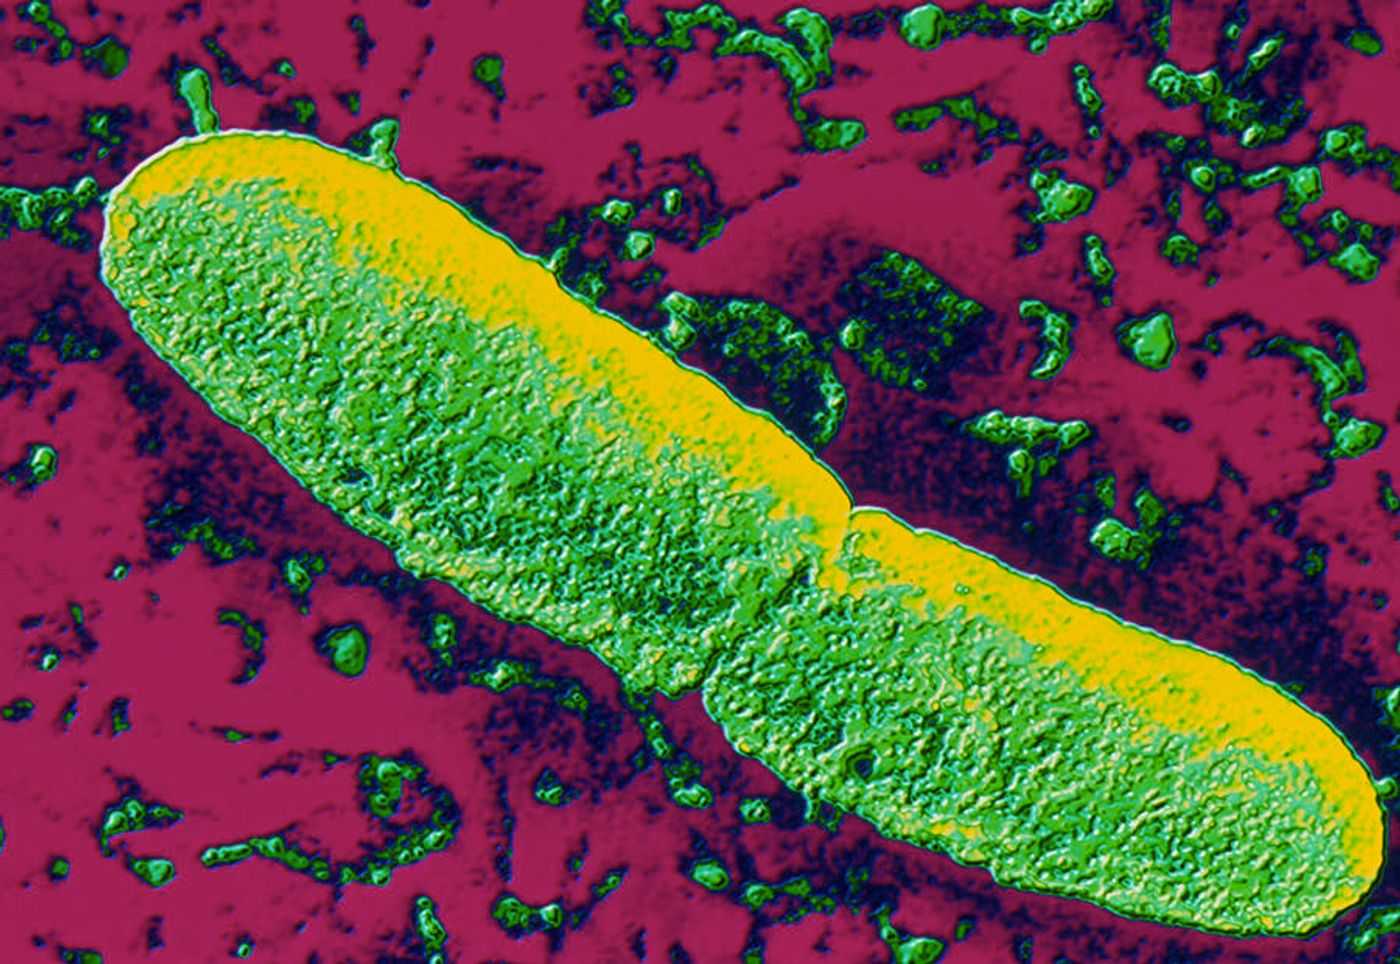 Ученые нашли следы самой древней эпидемии чумы в Британии